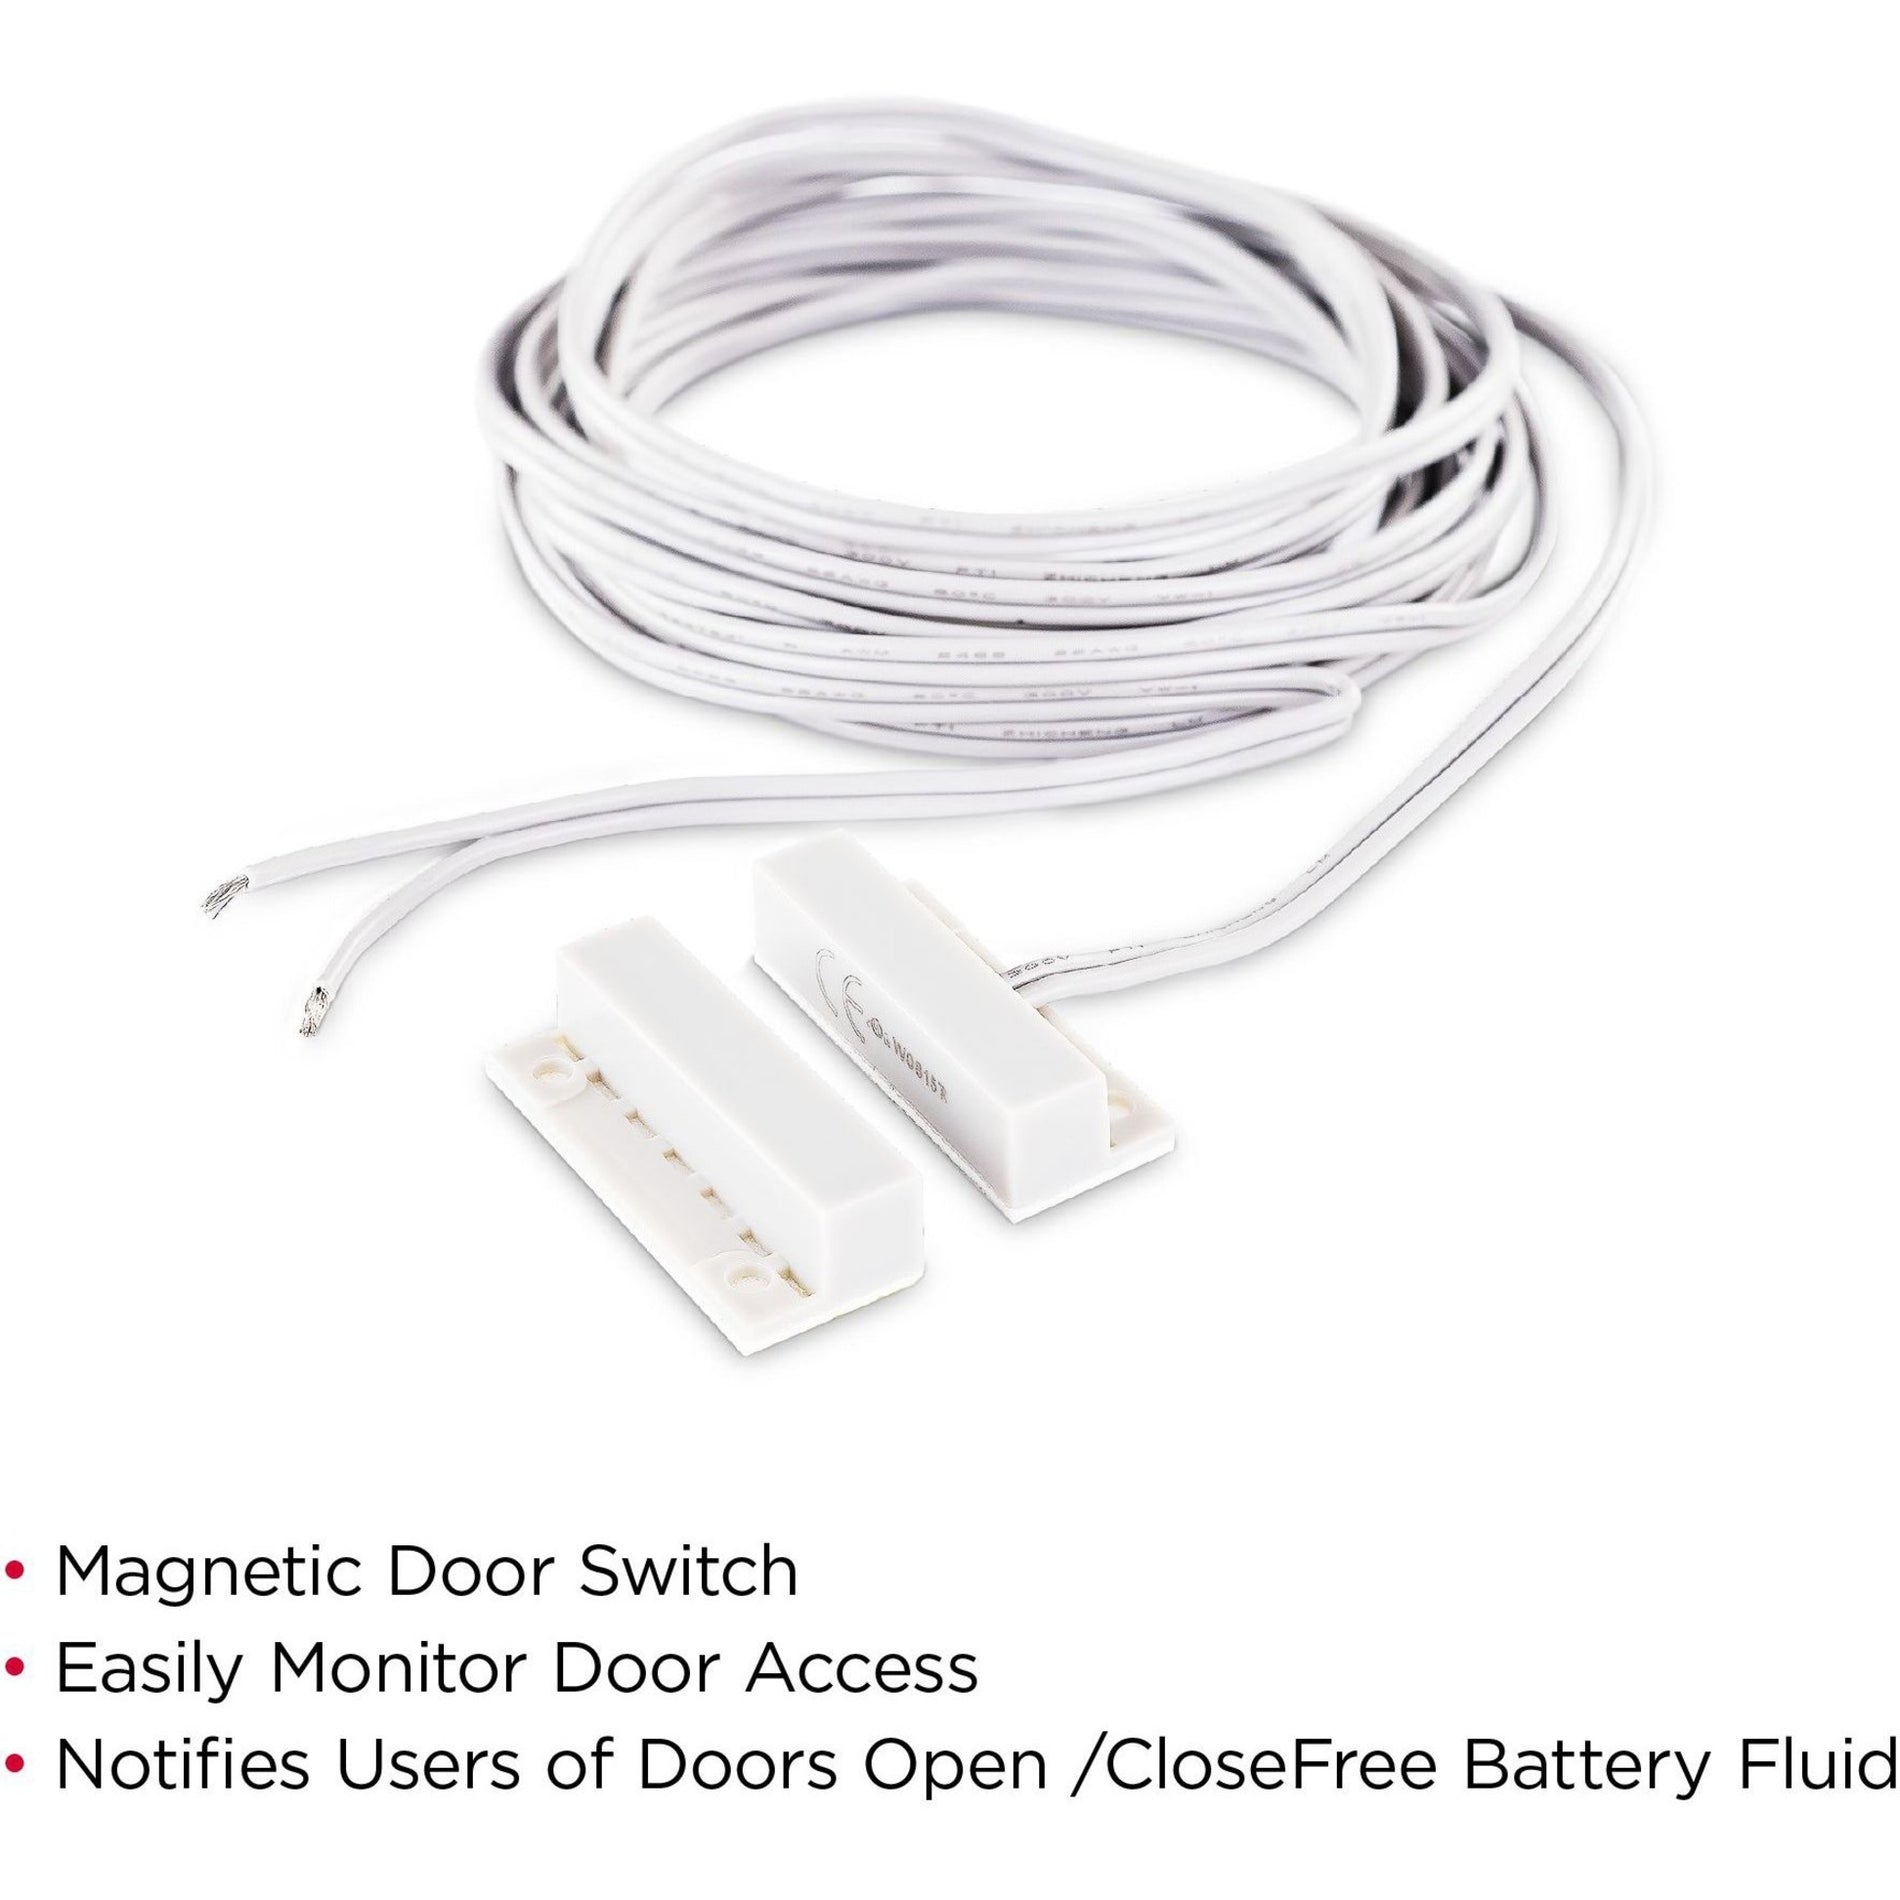 CyberPower DOORSENSOR Magnetic Door Switch 10ft - Grey, 5-yr Warranty